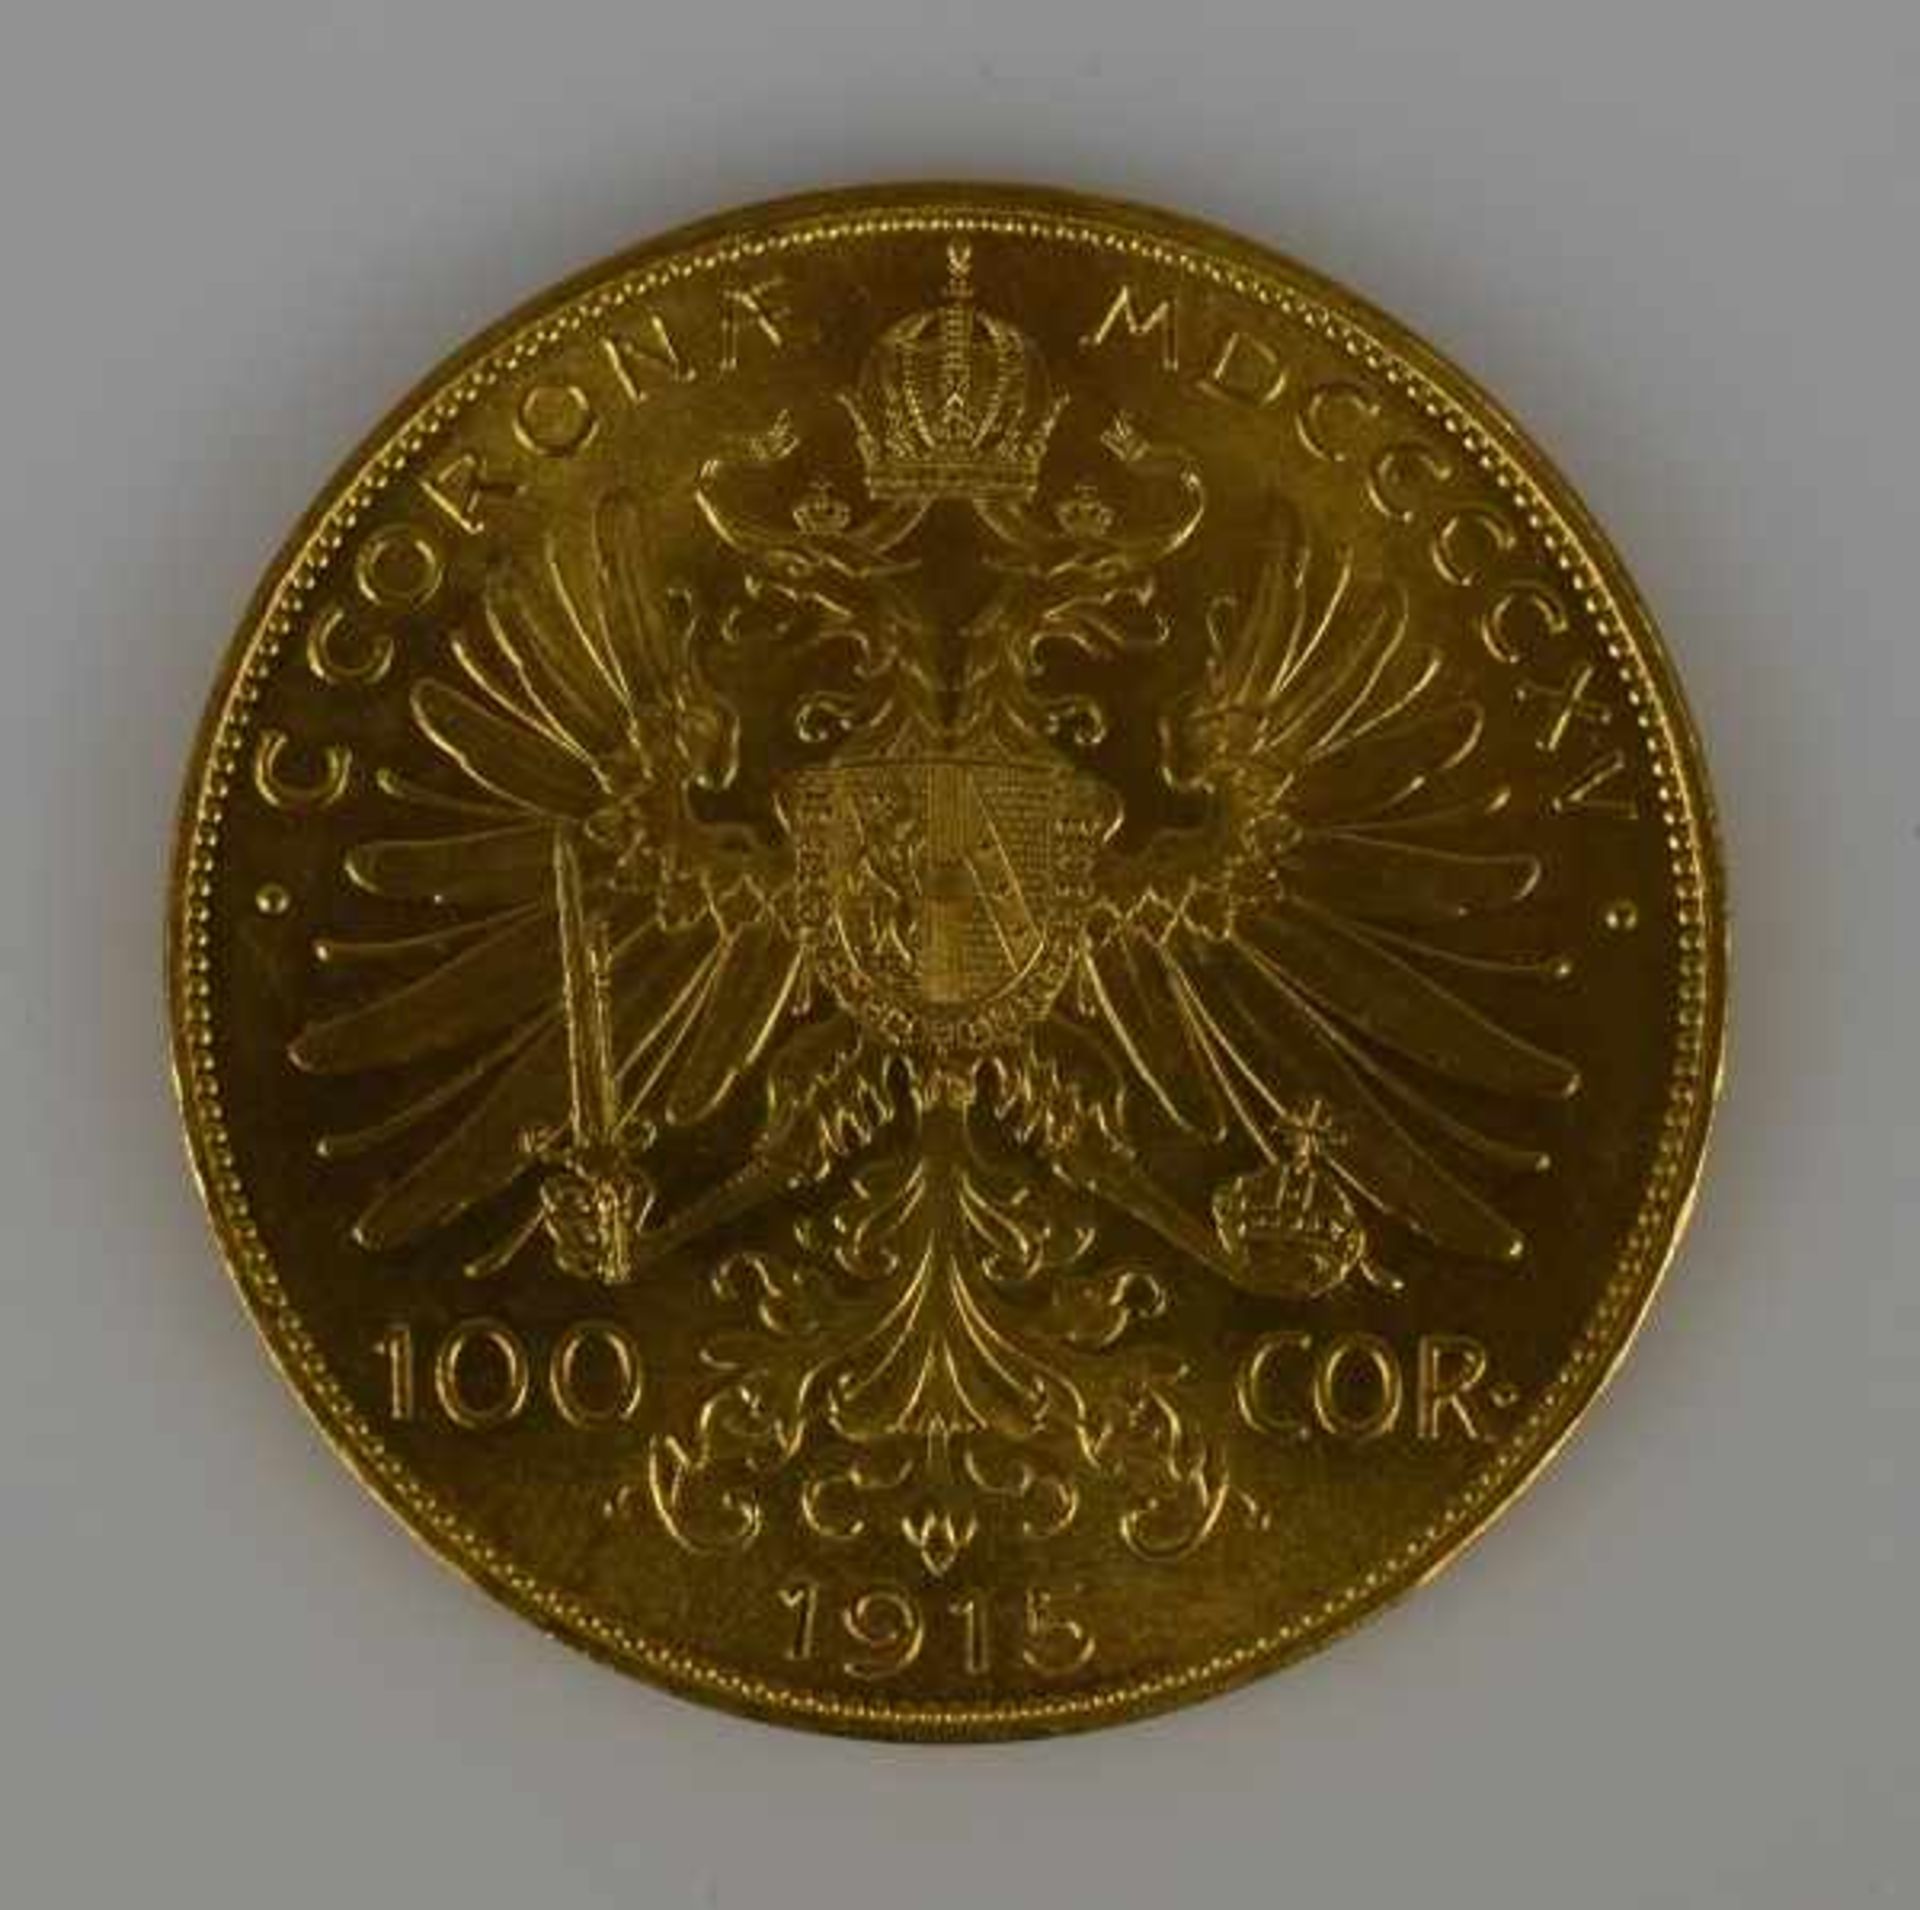 1 GOLDMÜNZE 100 Cor. (Kronenn) Österreich, Franz Josef III, 33,8g.